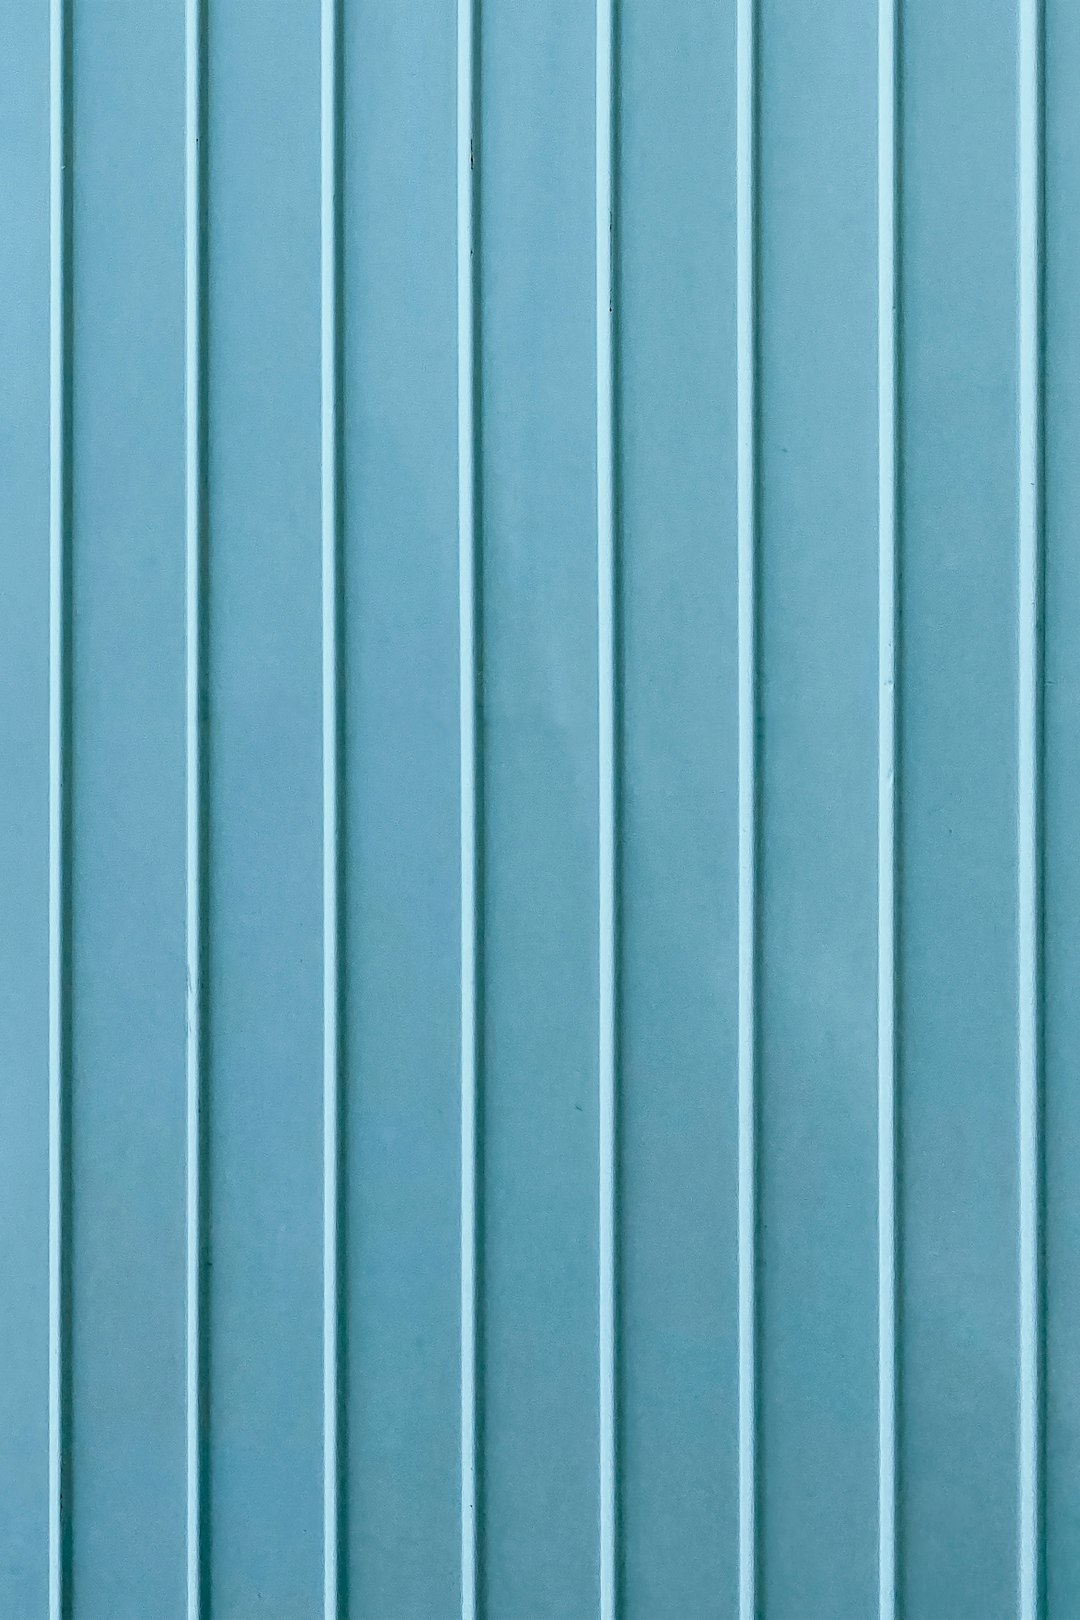 blue wooden door with gray steel door